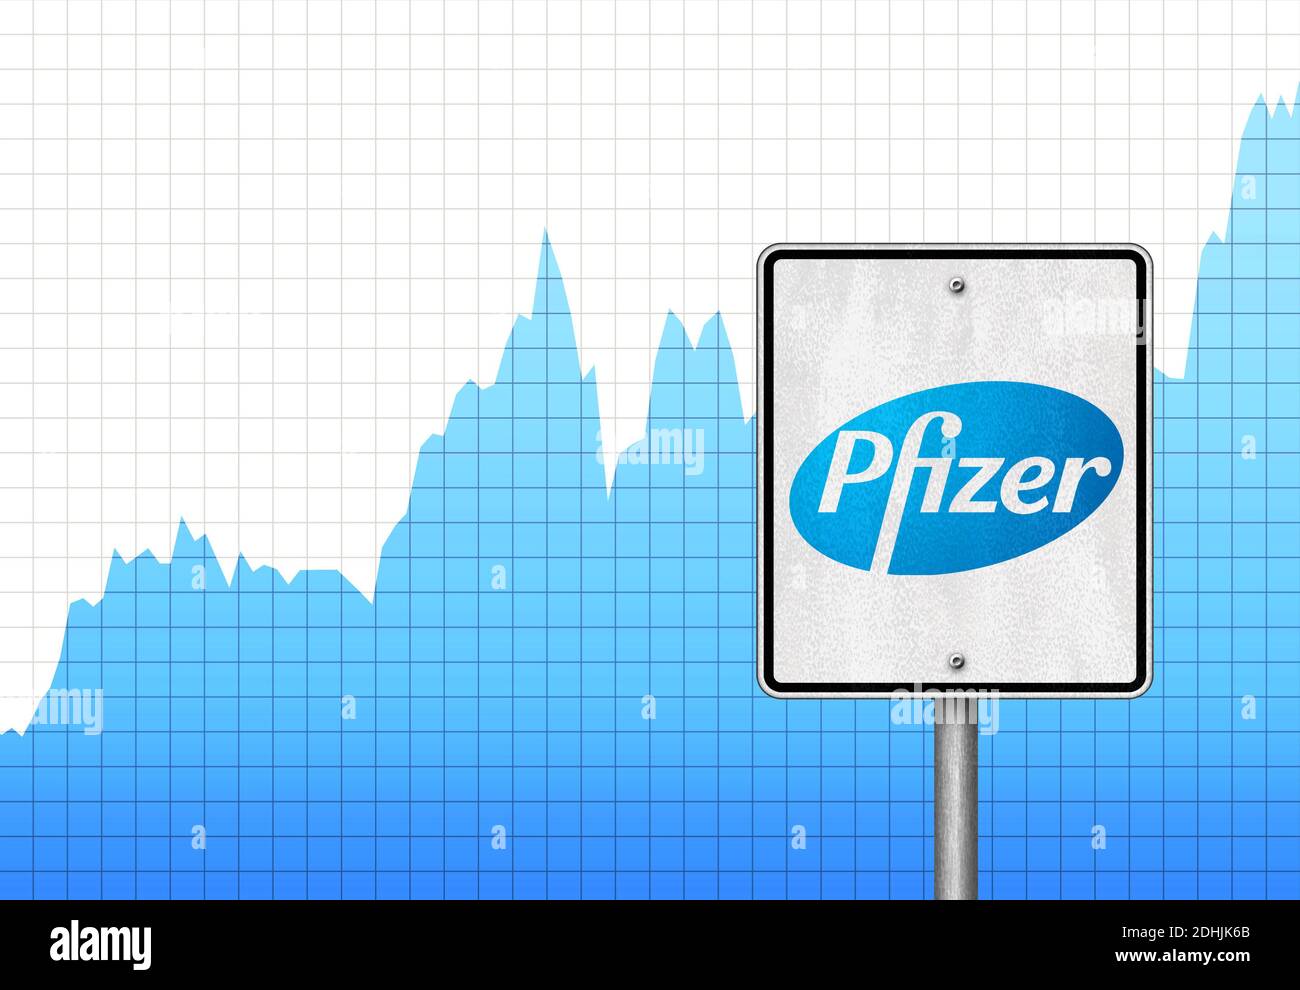 Pfizer stock chart Stock Photo